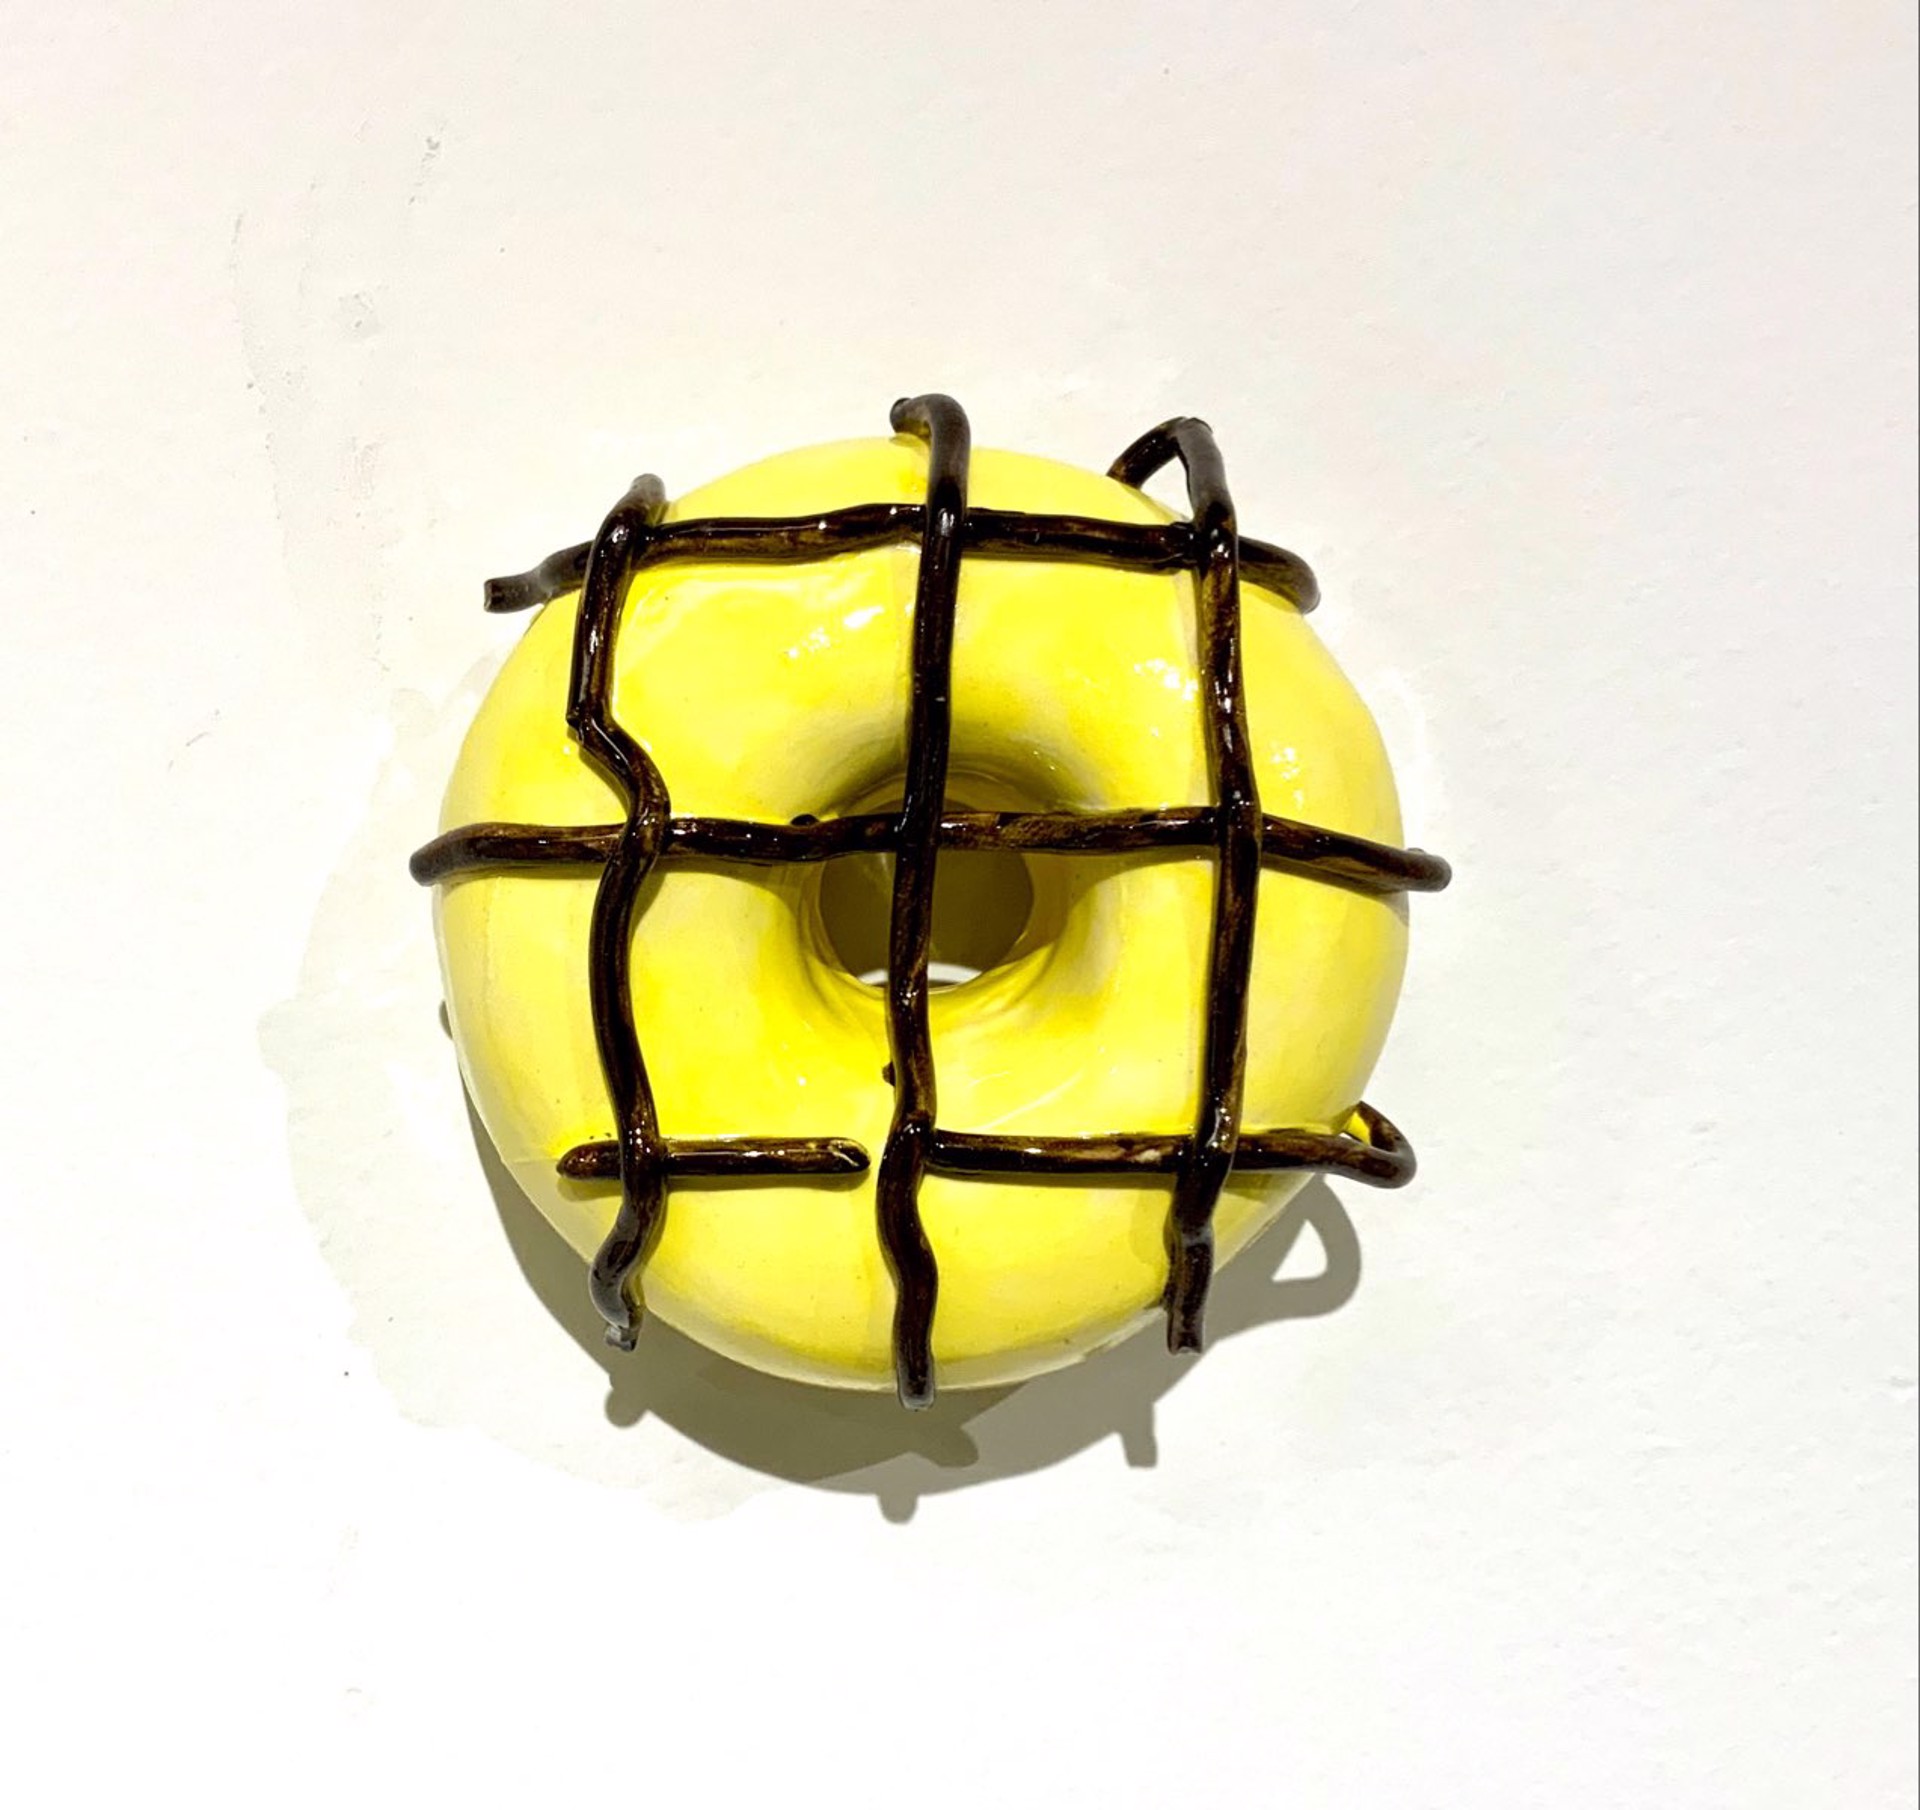 Donut by Liv Antonecchia